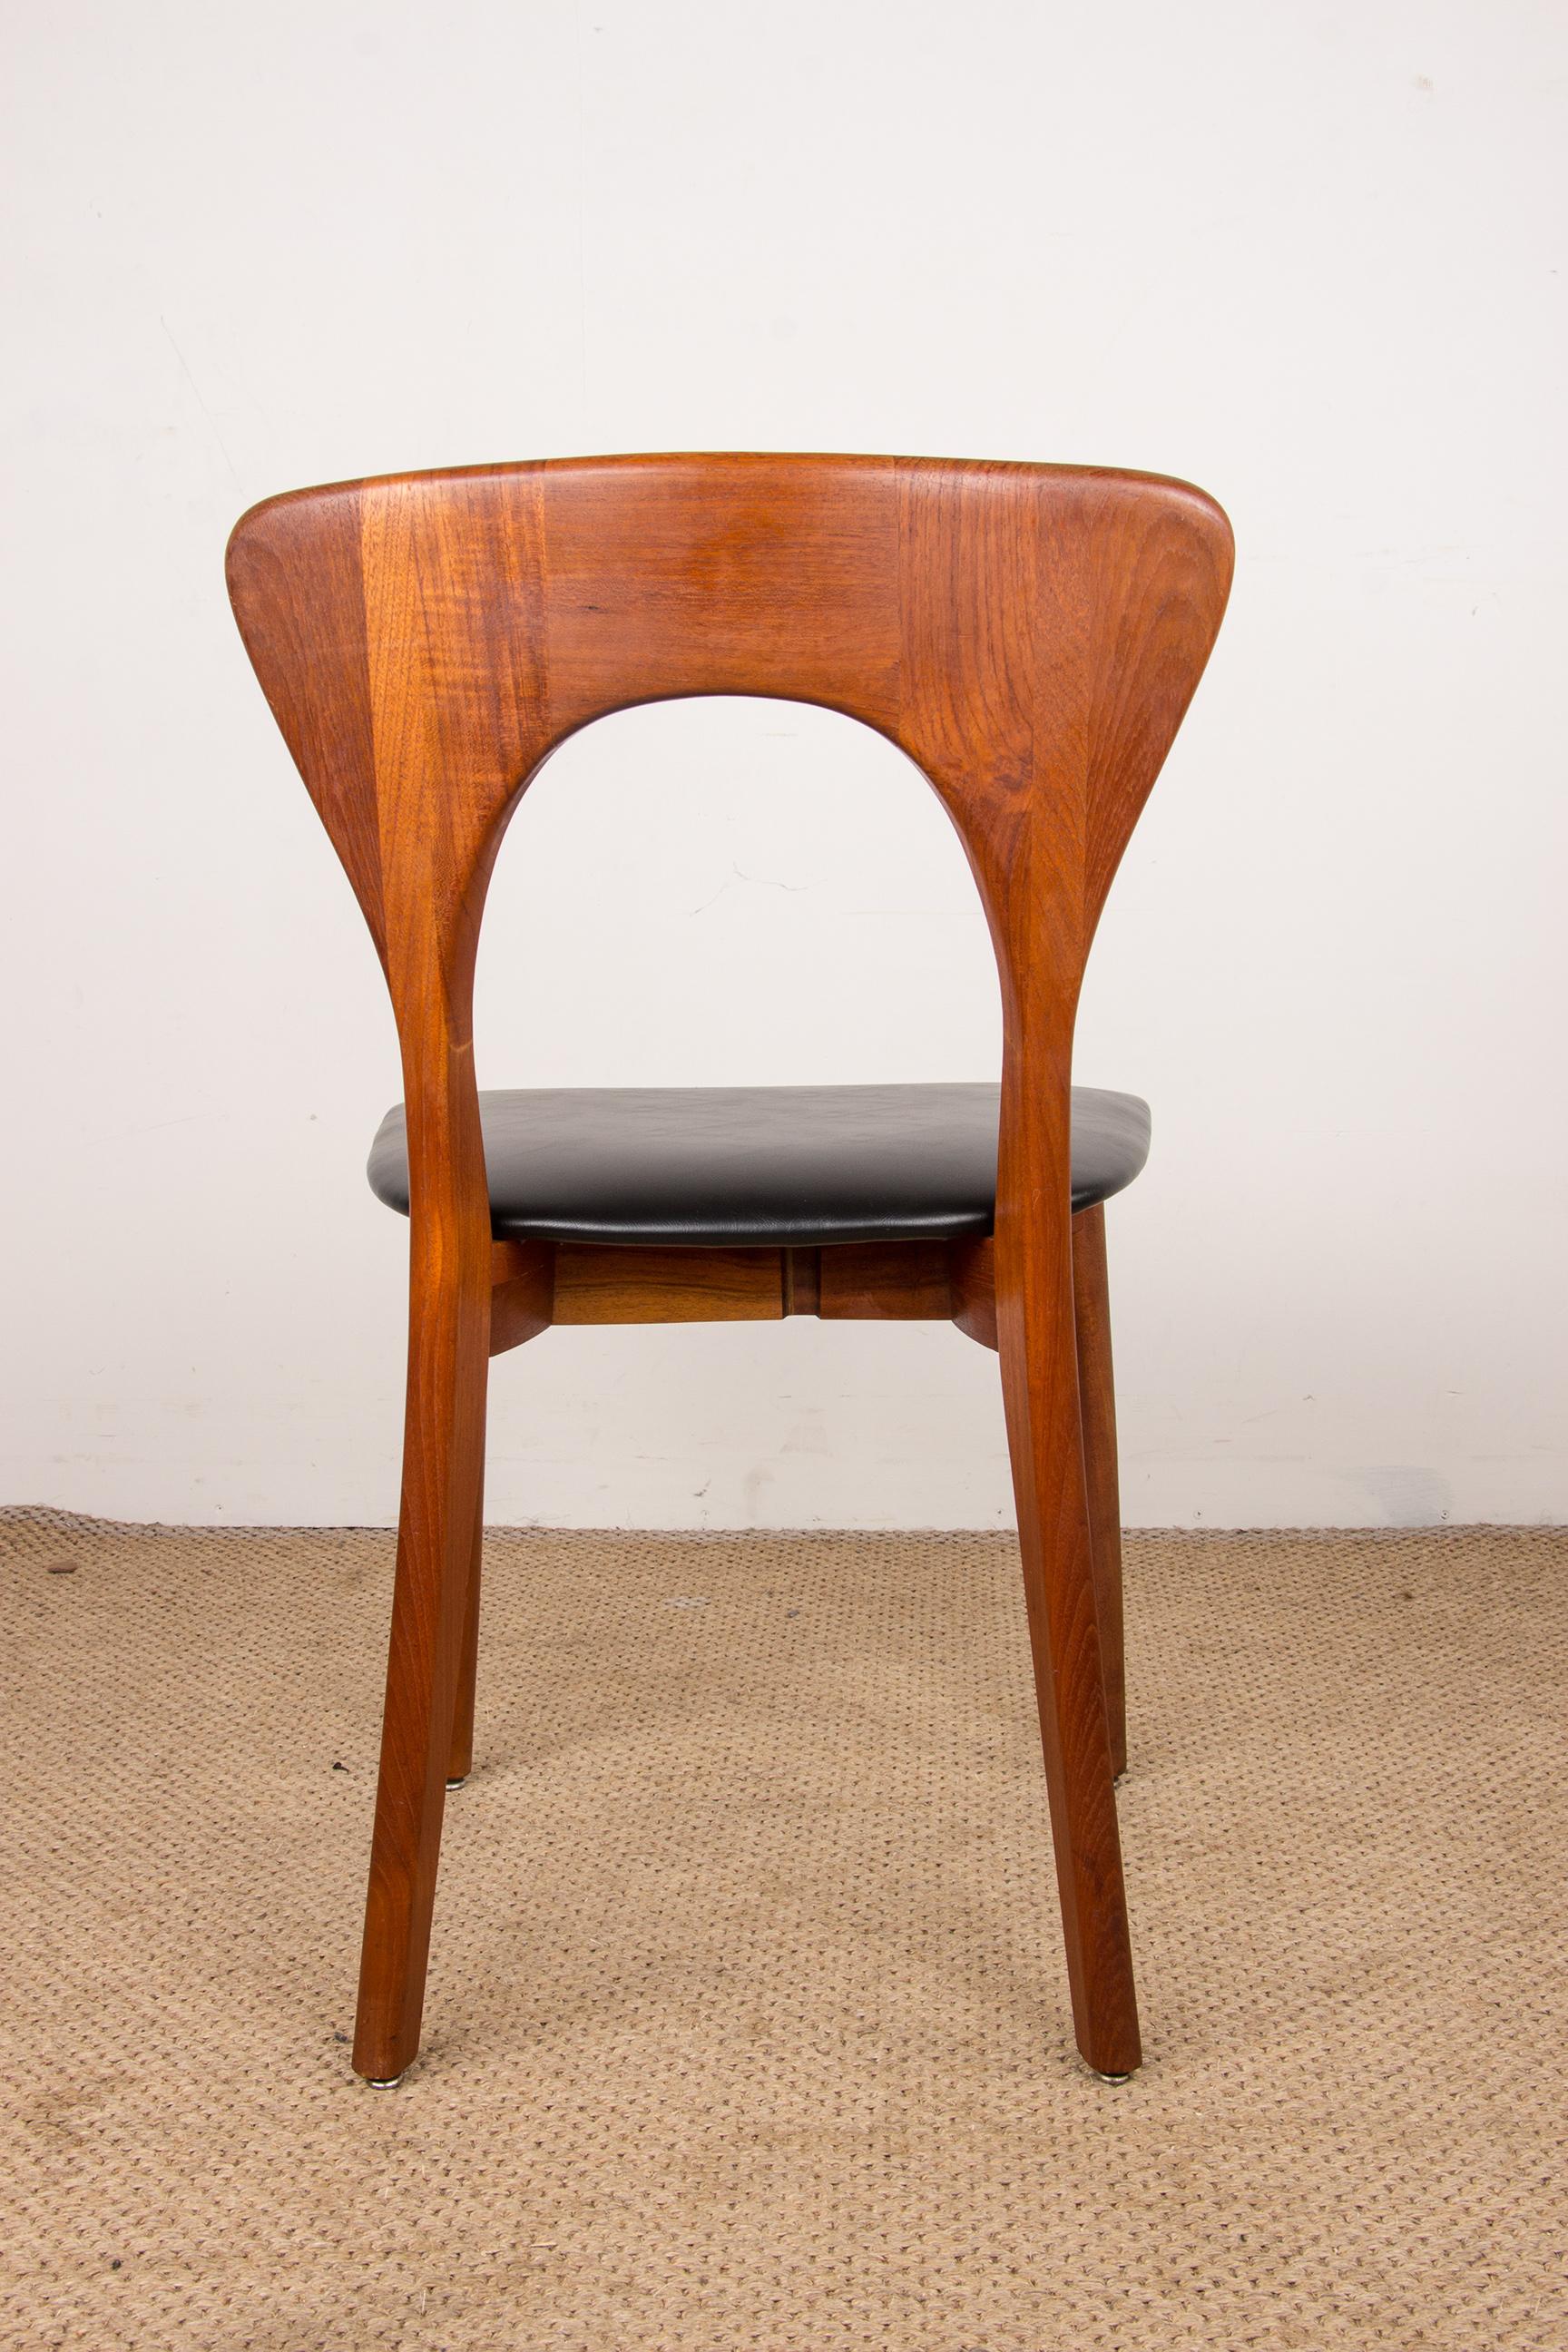 Series of 6 Danish chairs in Teak and skai, Peter model by Niels Koefoed 1960. 10